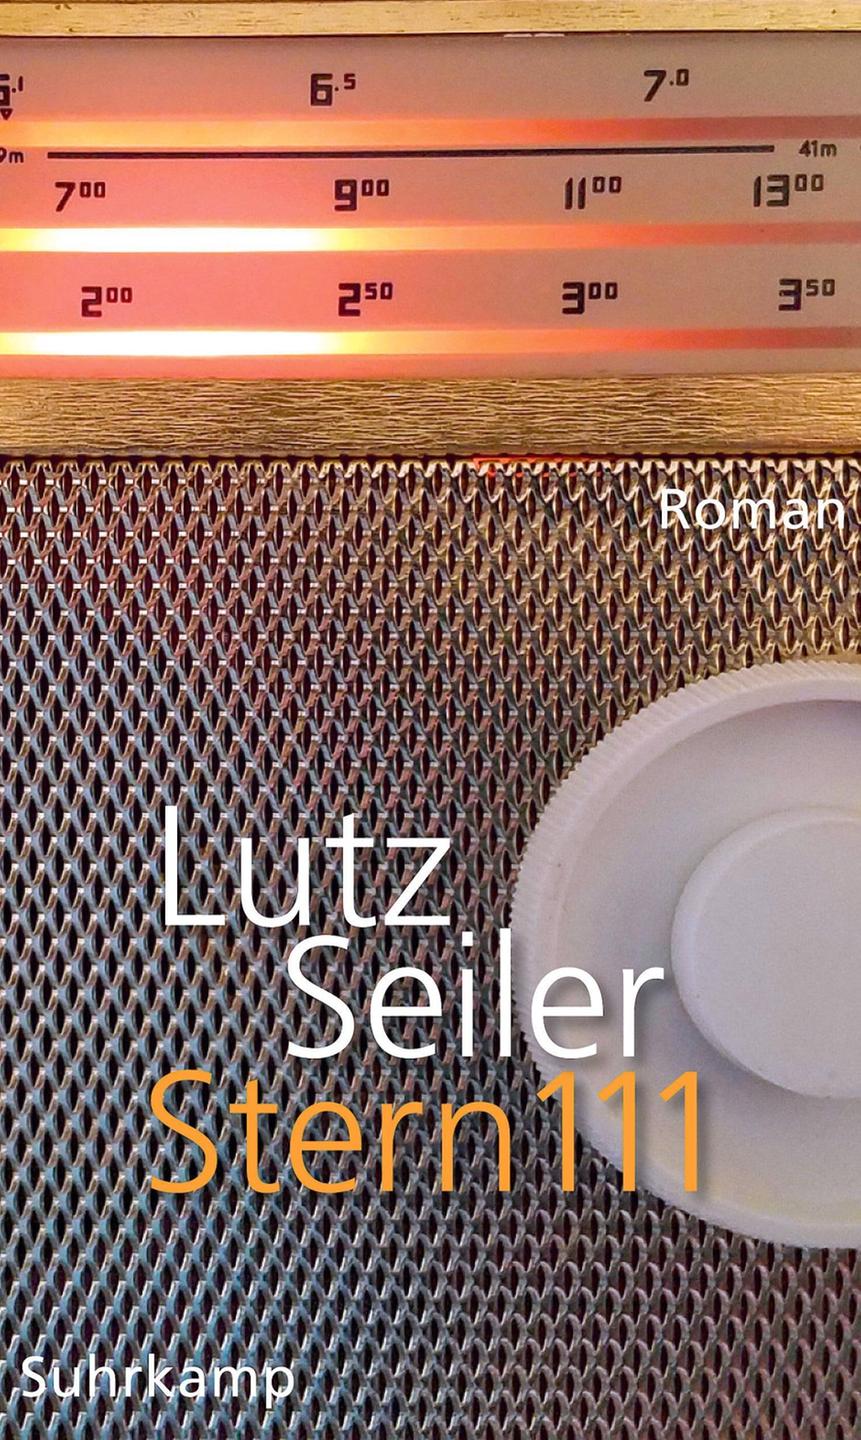 Buchcover des Romans "Stern 111" von Lutz Seiler. Zu sehen ist ein Ausschnicht eines Transistorradios.